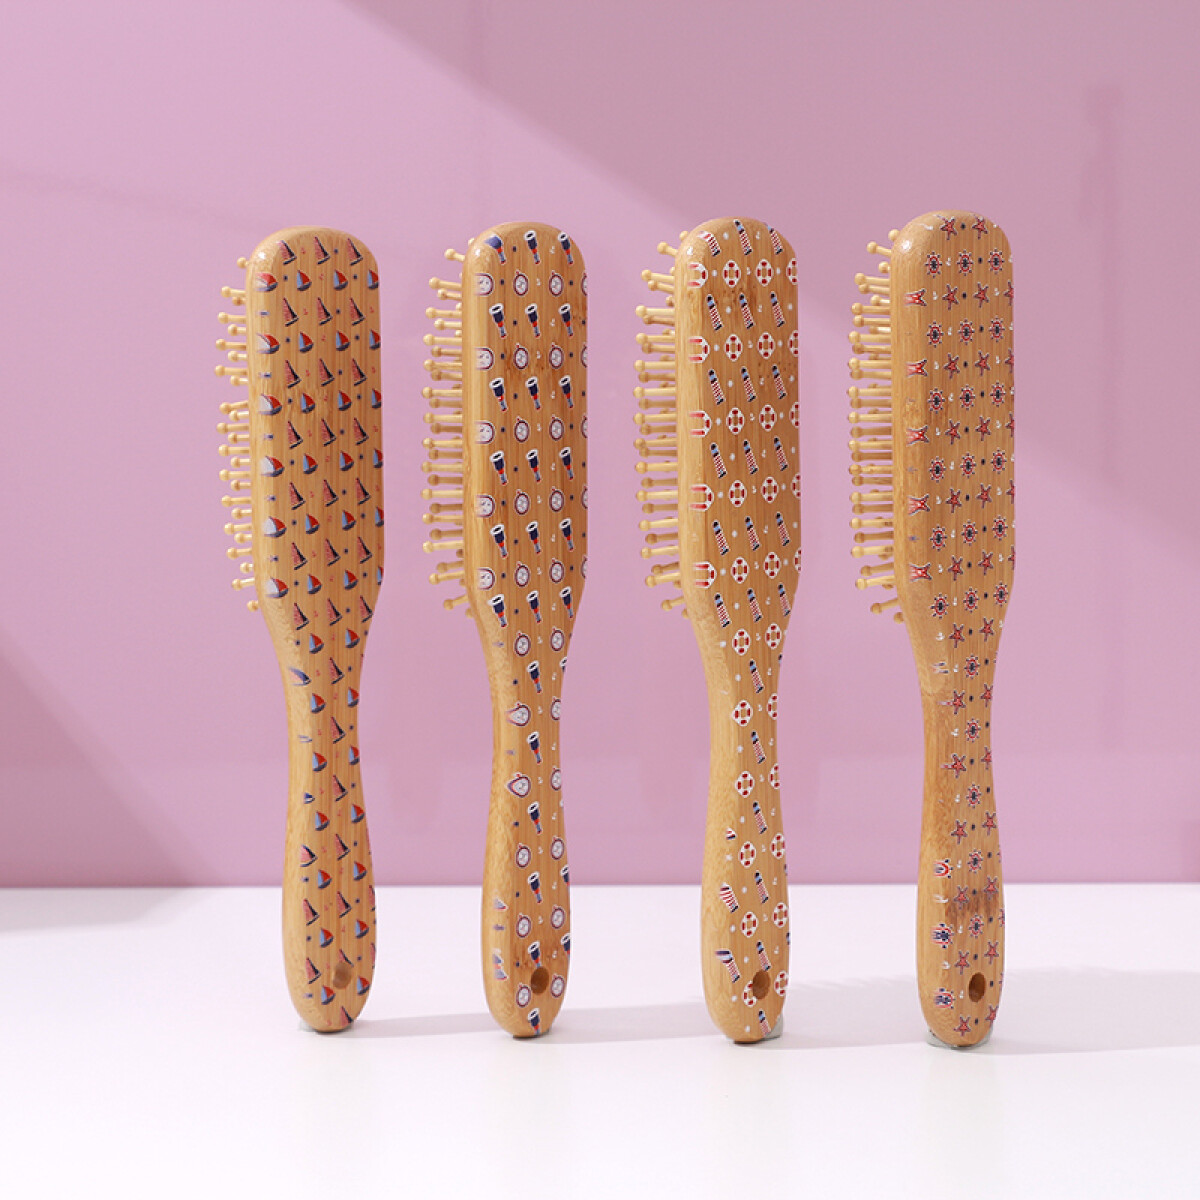 Cepillo De Pelo De Bambú Serie Náutica - Unica 